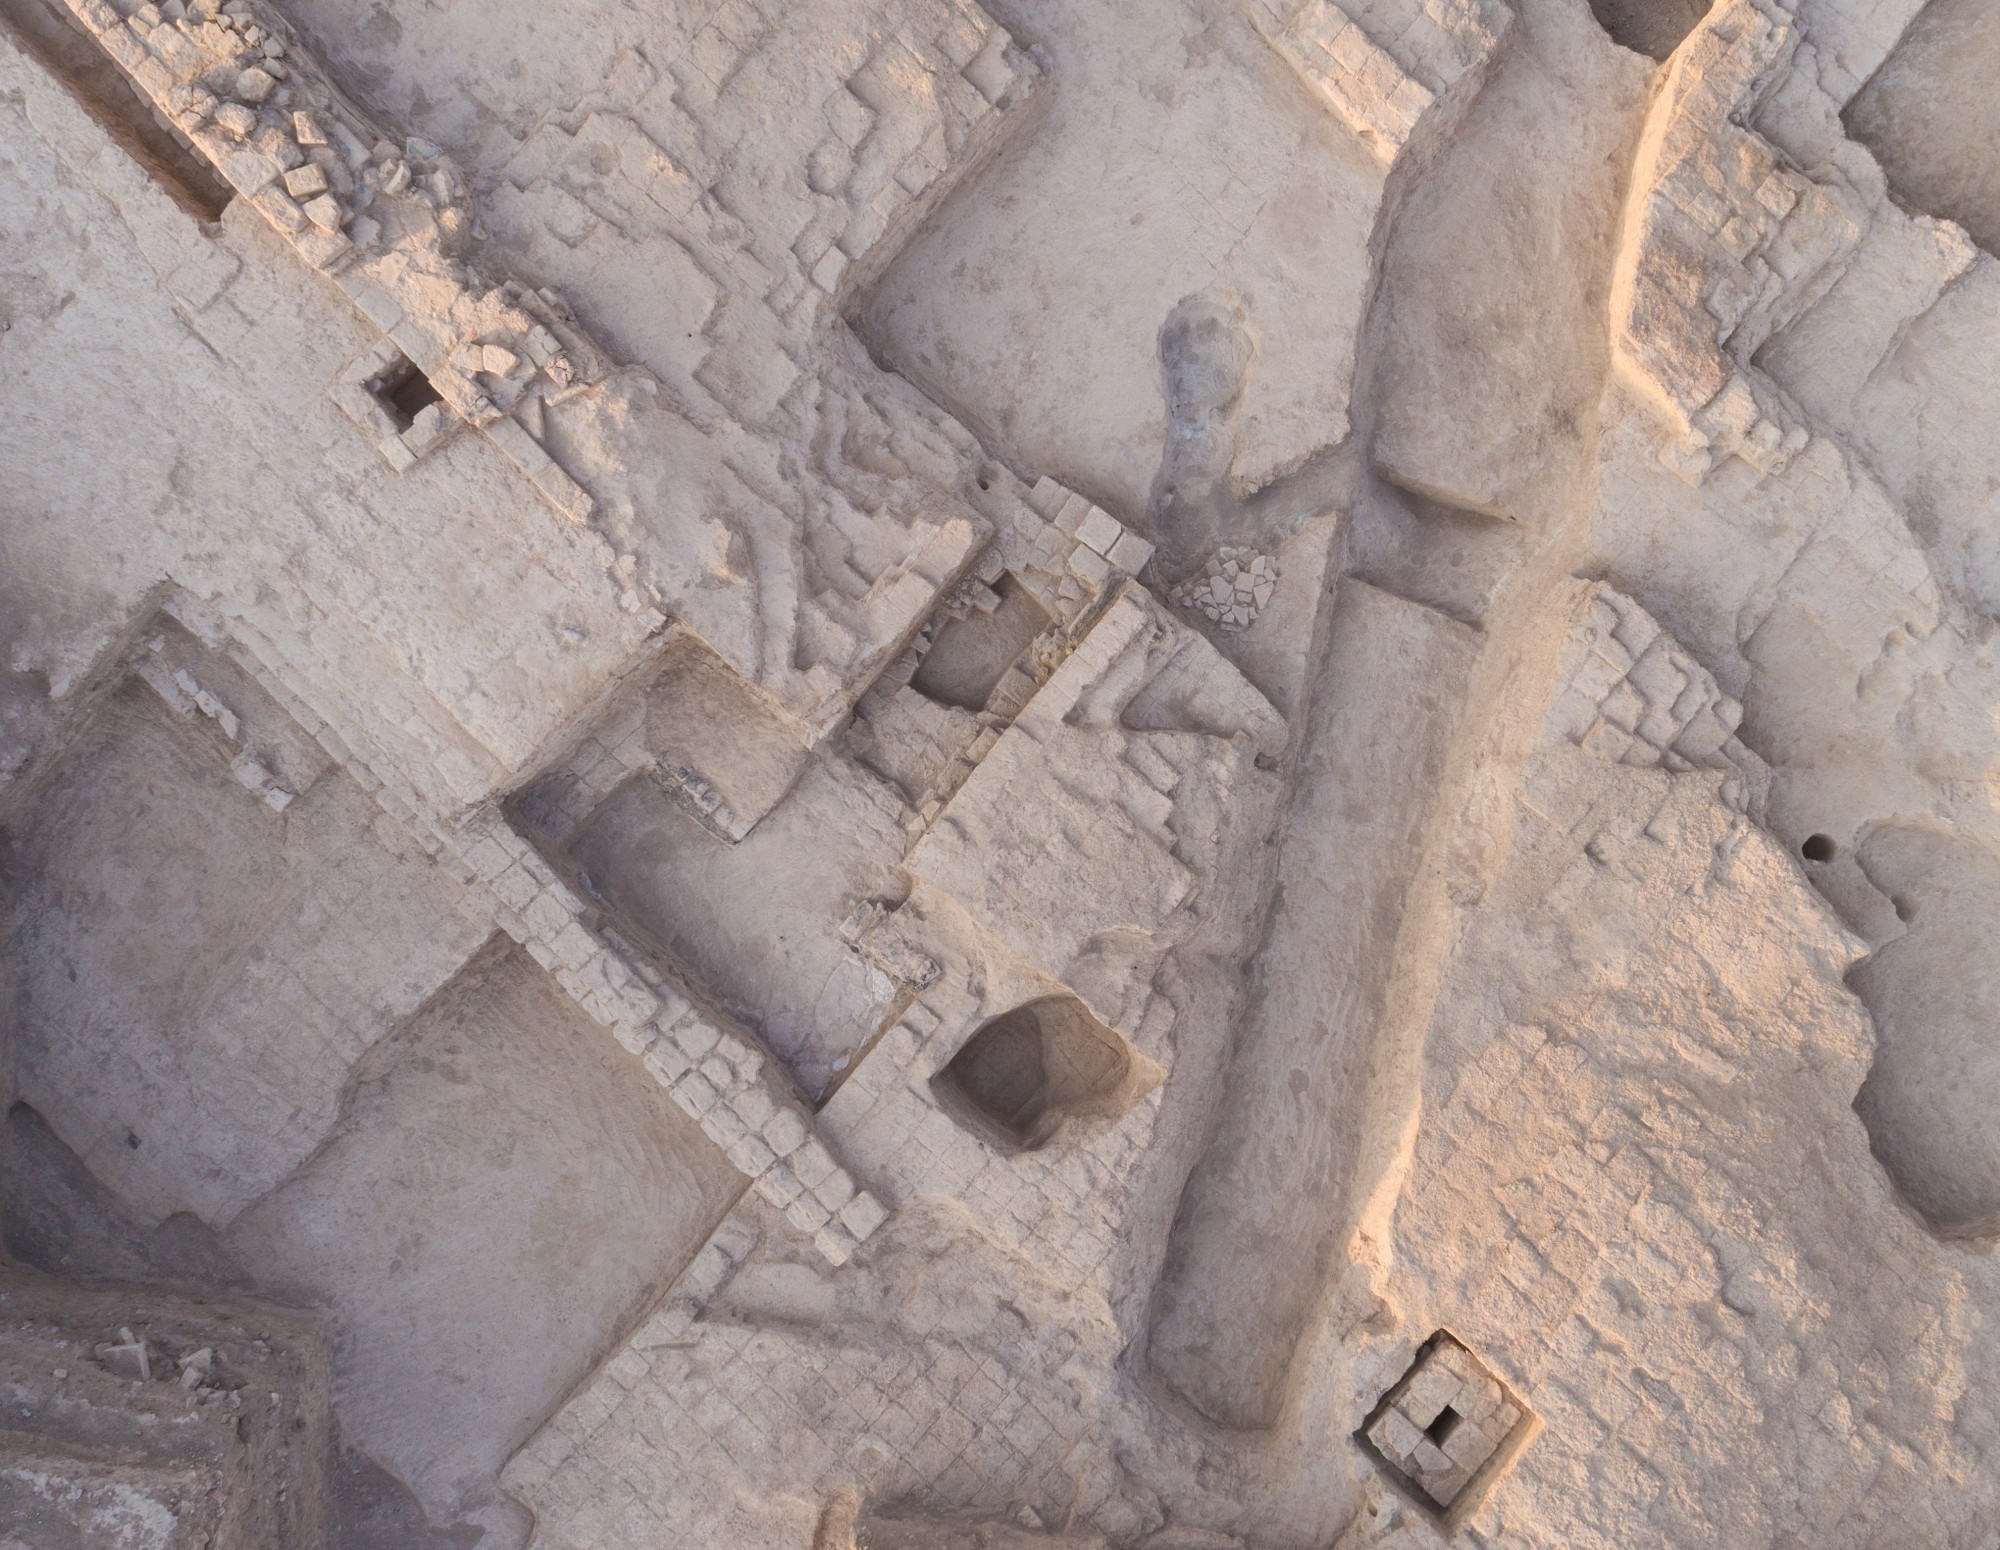 Vue aérienne des fouilles françaises menées sur la colline du temple au XIXe et au début du XXe siècle. On peut y voir de vastes fossés en rampe et de grandes fosses horizontales, ainsi qu'un long fossé étroit et profond allant du nord au sud et quelques 